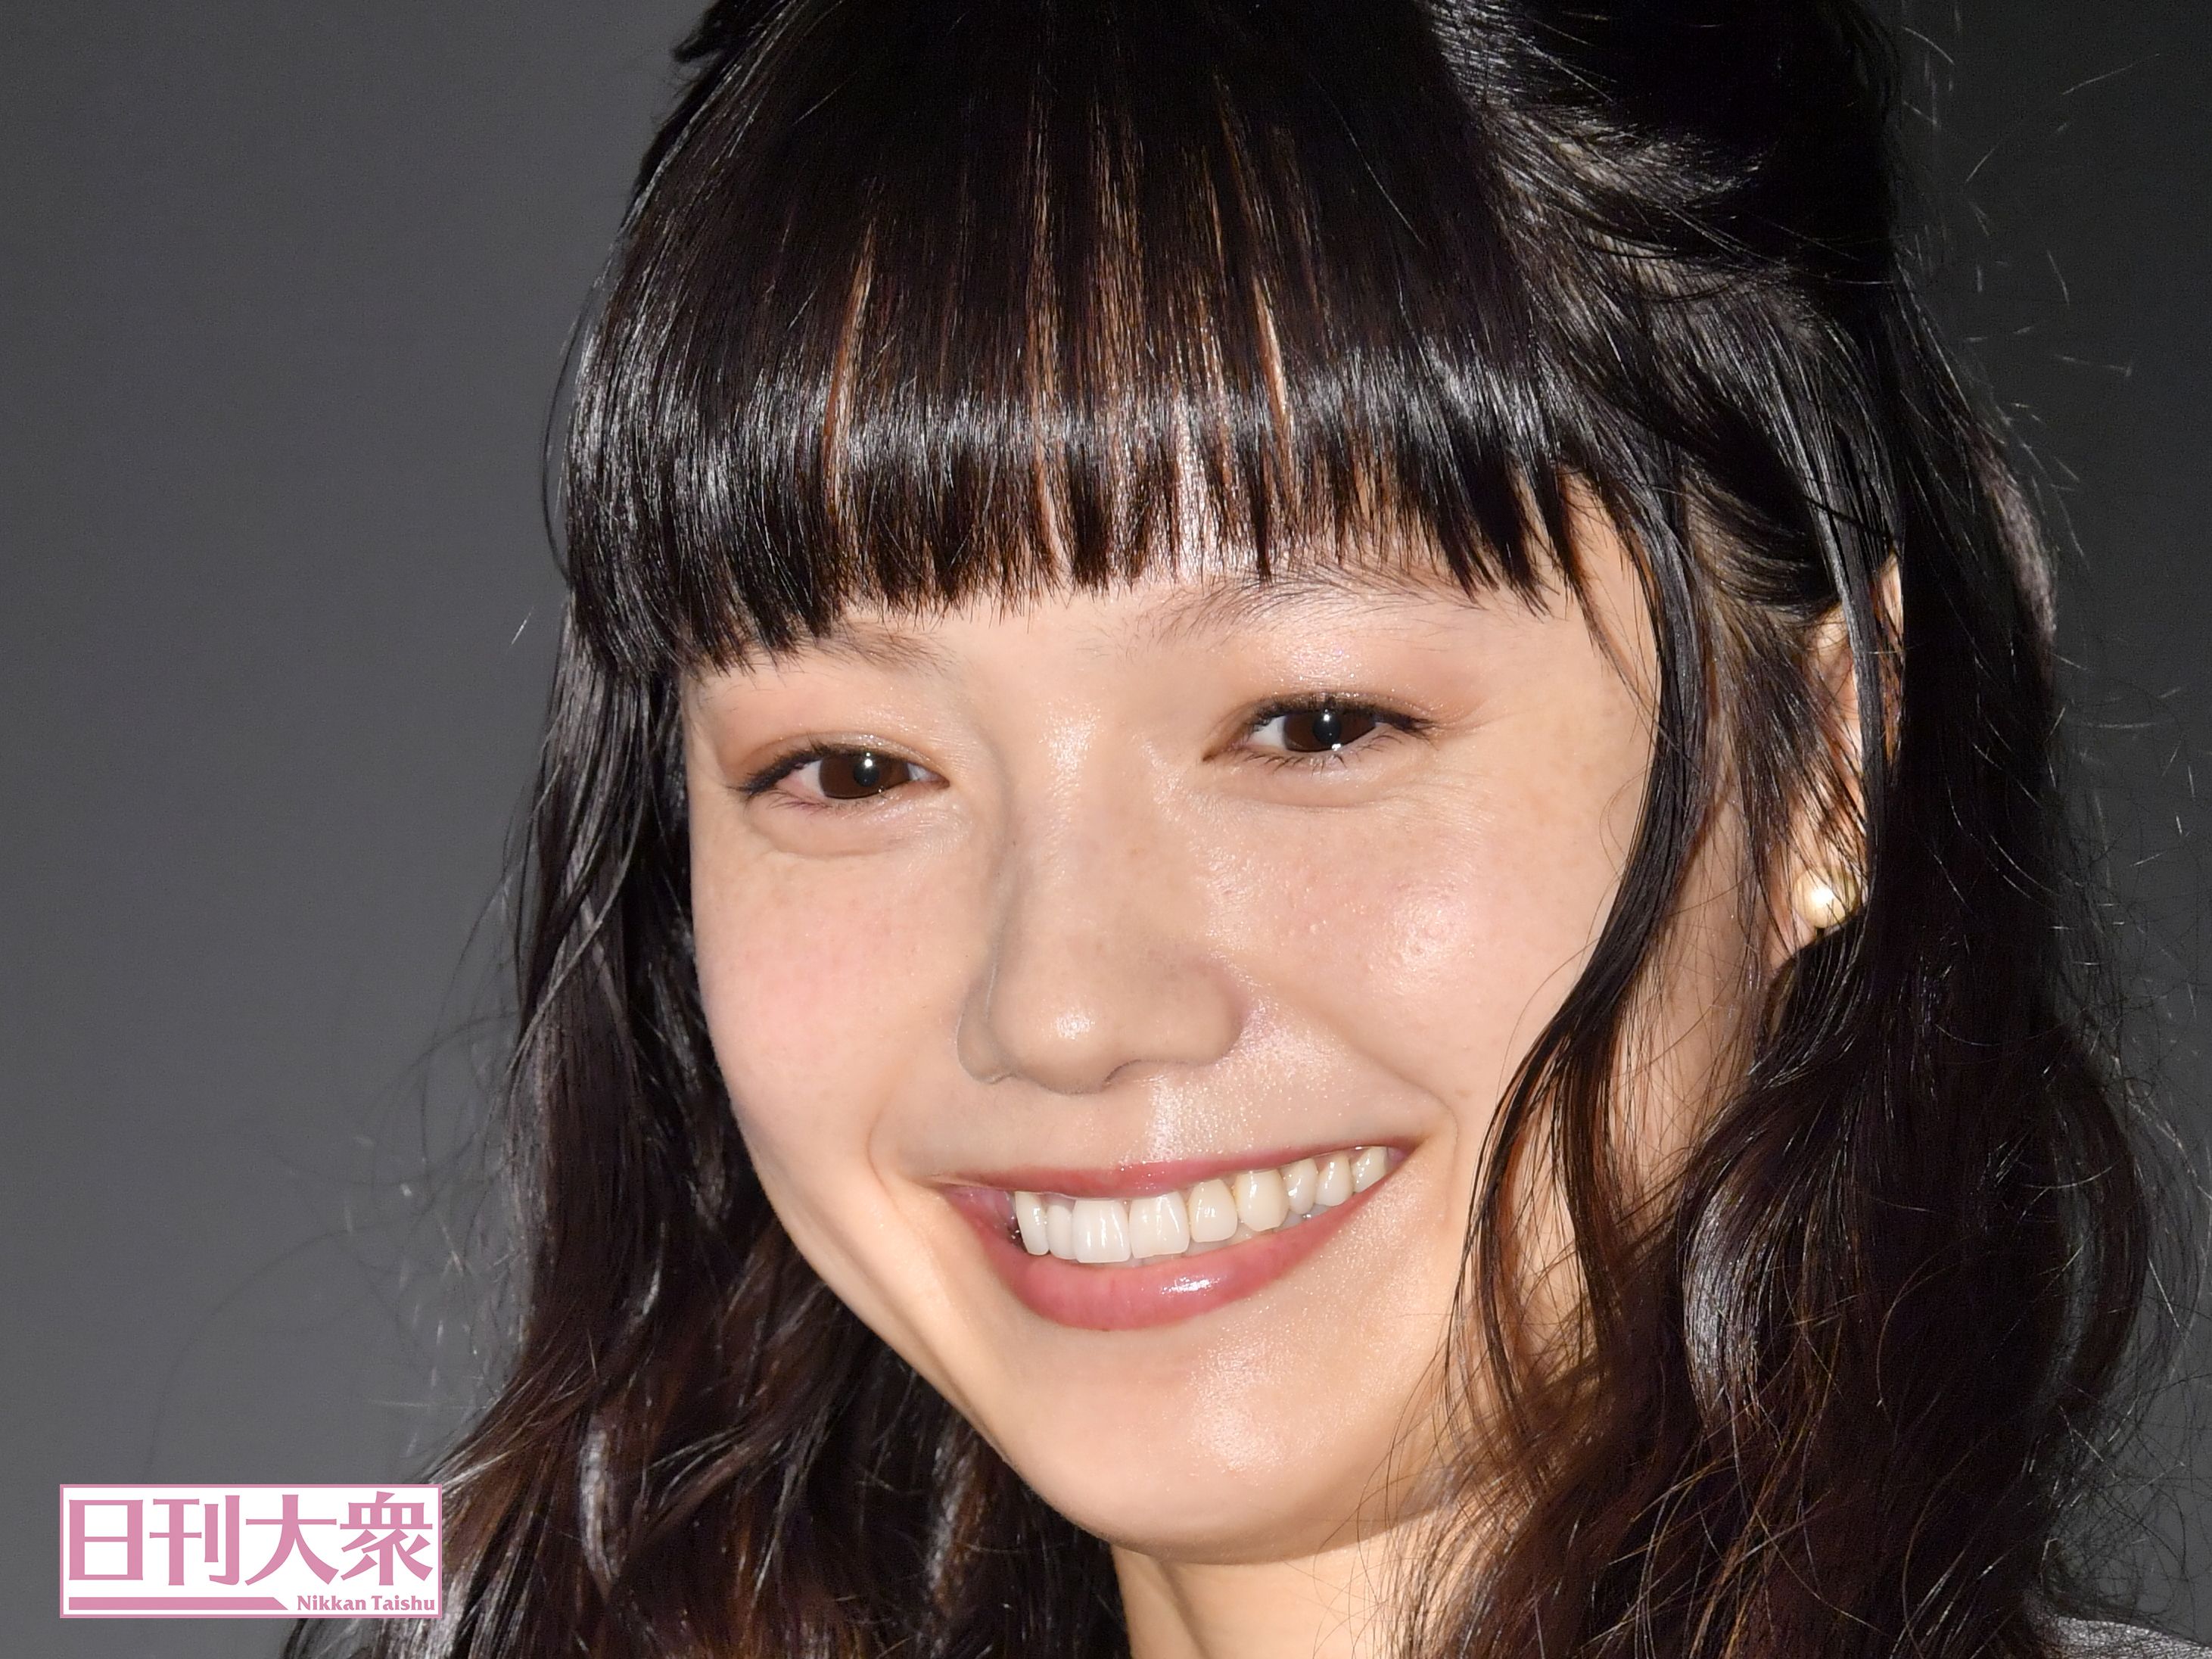 宮崎あおいがアイドル系女優として初単独主演を果たした2008年『篤姫』「アイドル出演重要大河ドラマ4」の画像